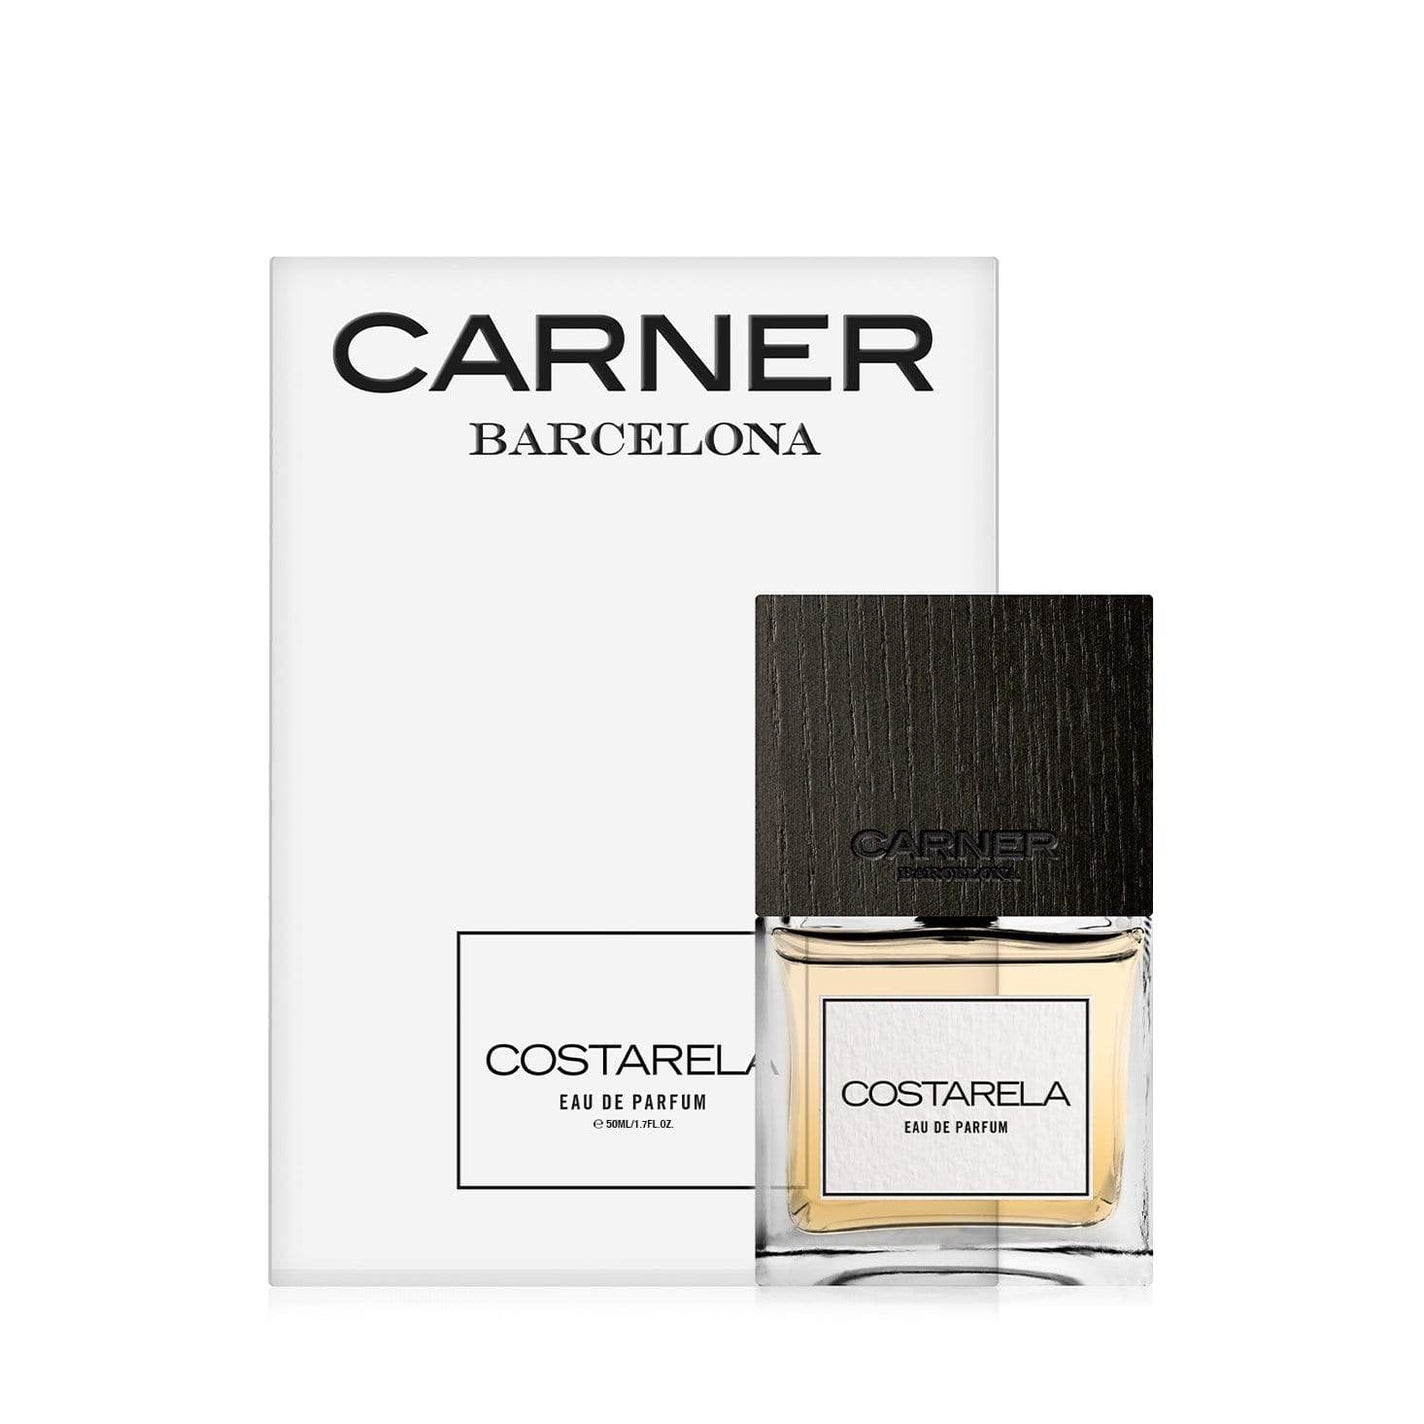 CARNER BARCELONA Costarela Eau de Parfum - 50ml